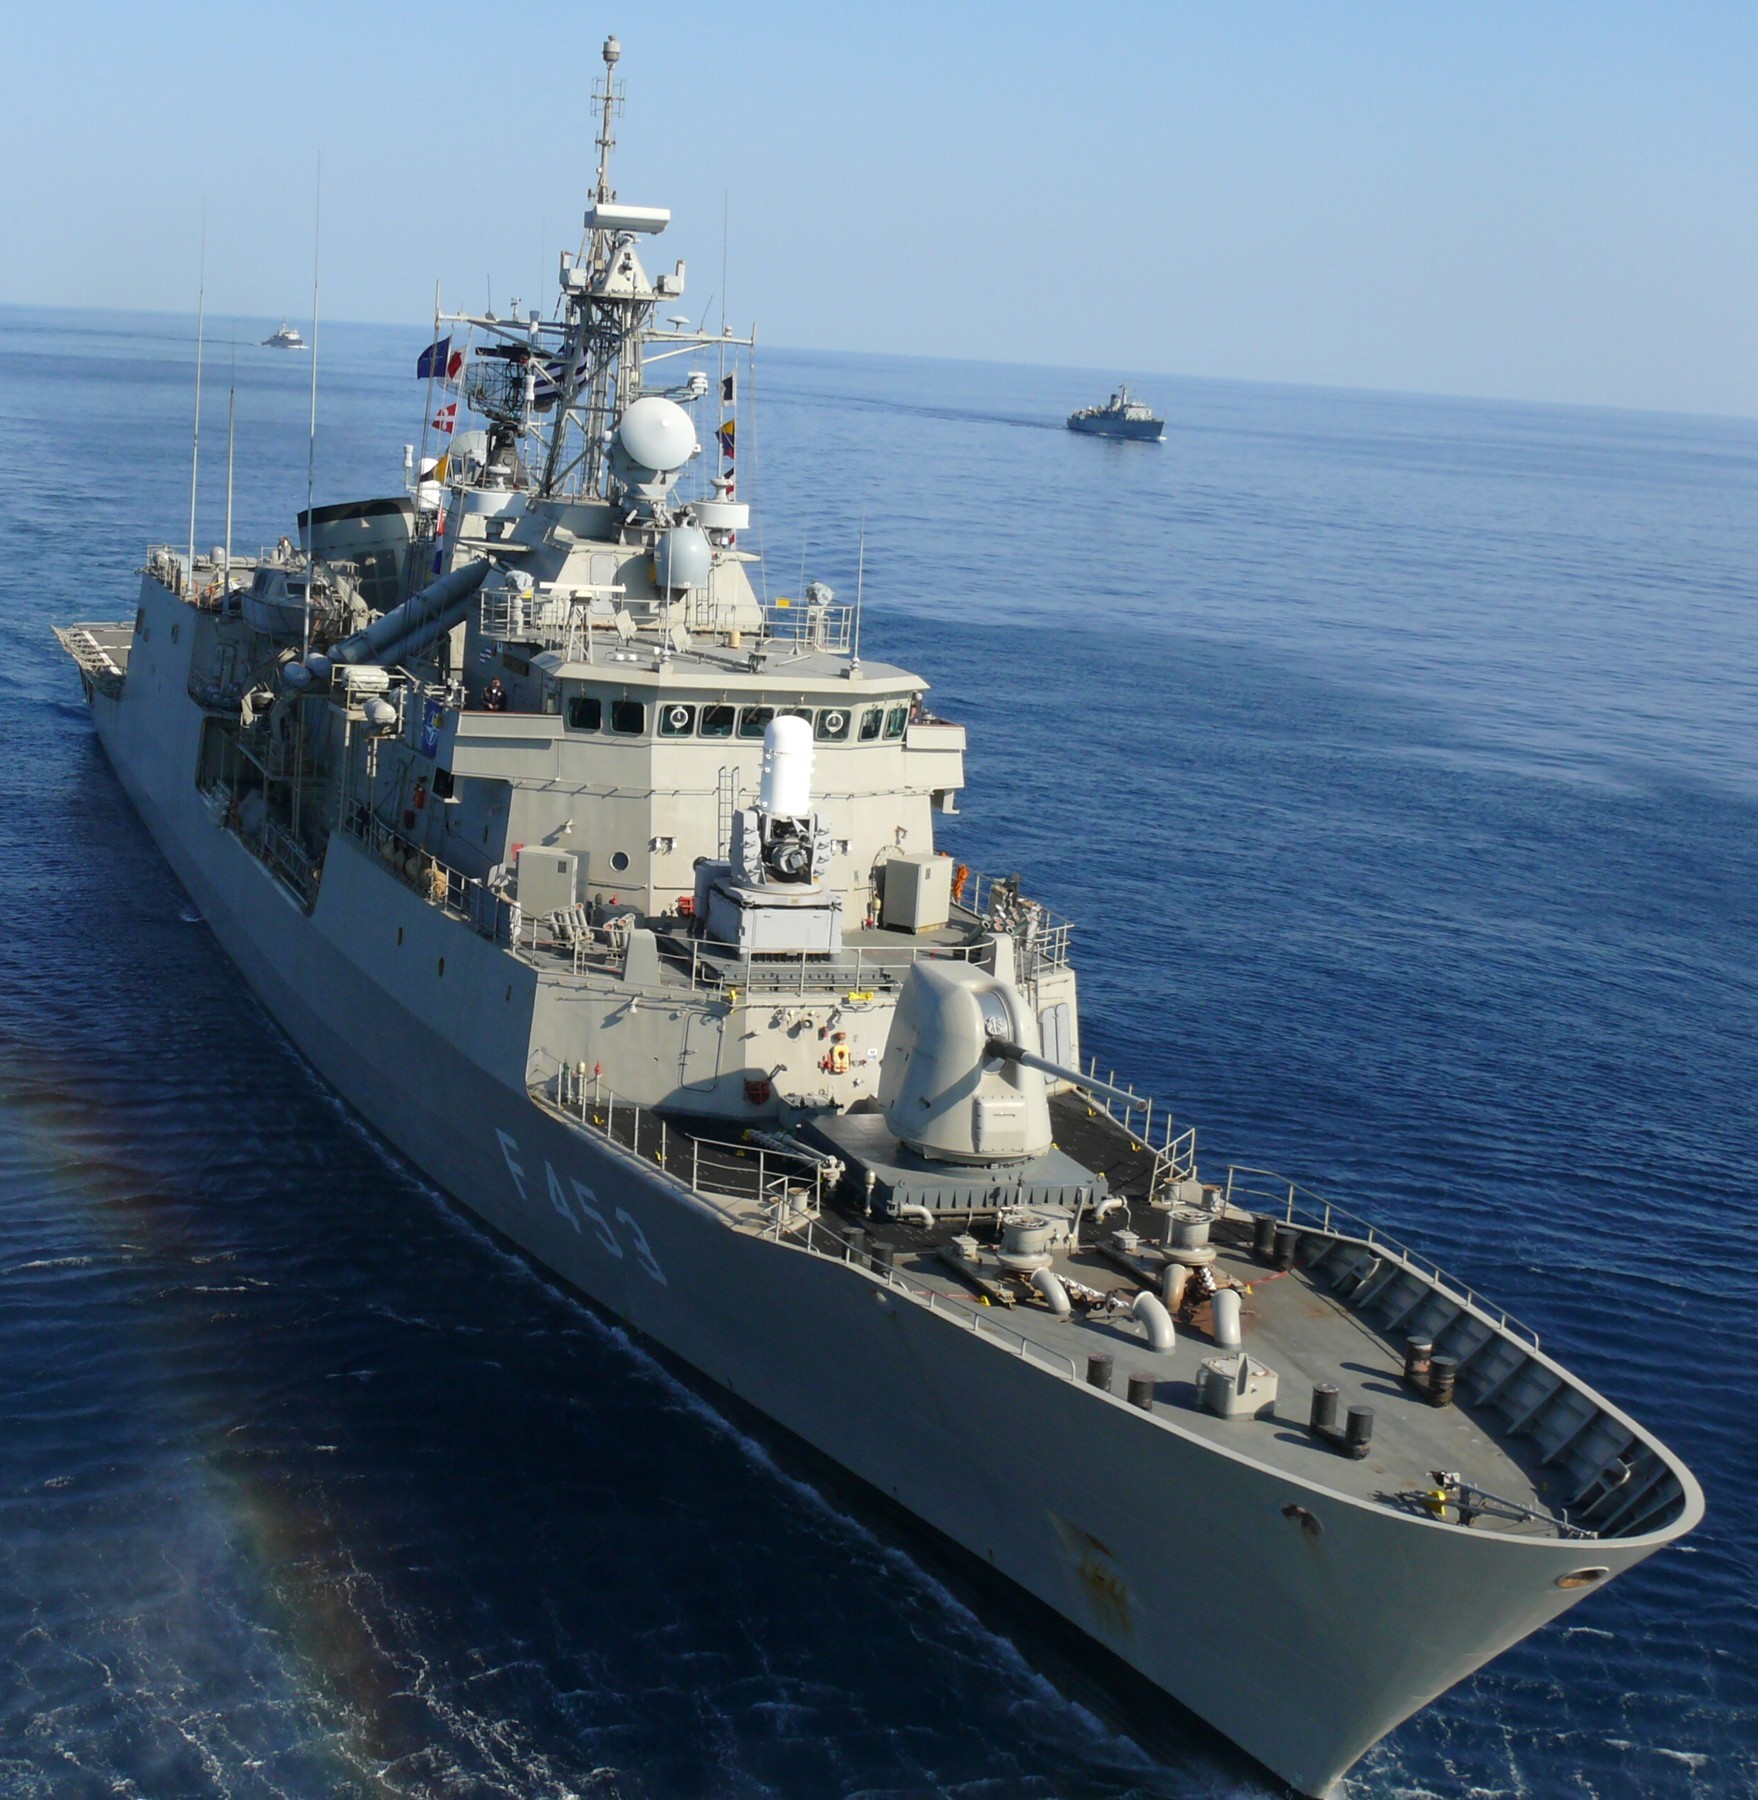 f 453 hs spetsai hydra class frigate meko-200hn hellenic navy greece 19